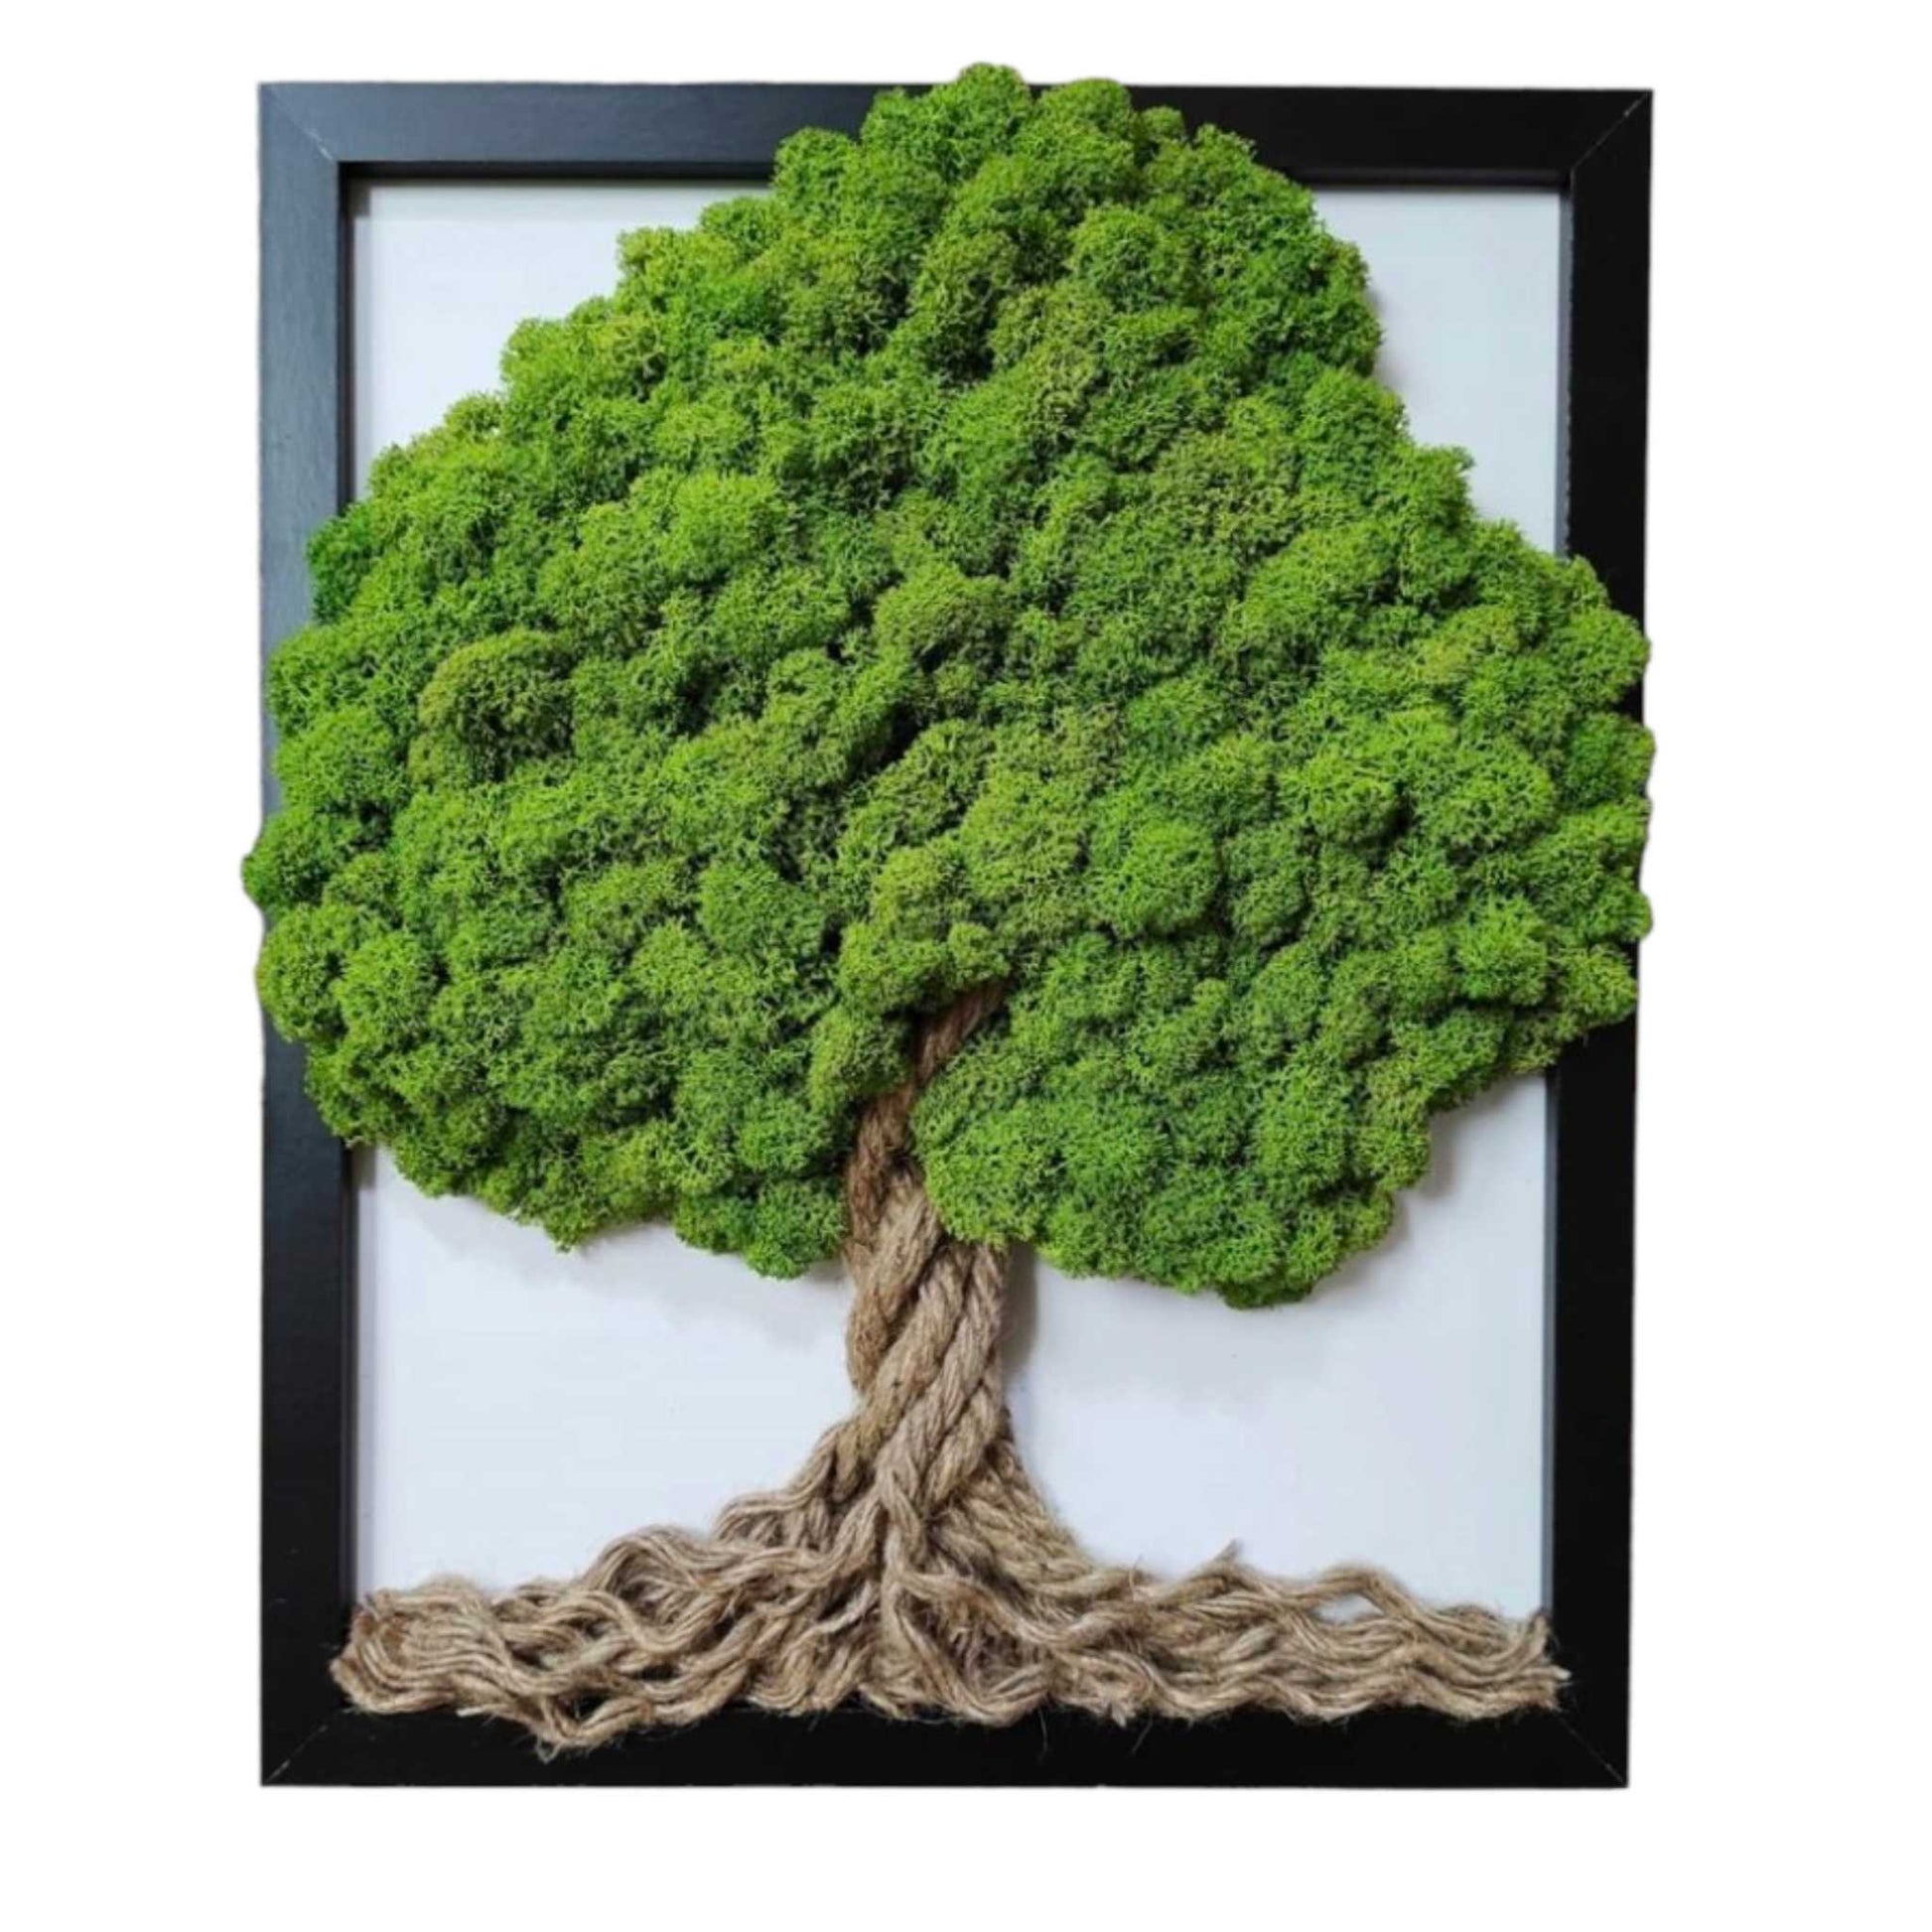 Tablou cu licheni naturali, stabilizati si funie modelata manual, cu rama neagra din lemn natur, copac 3D de 20x25 cm.